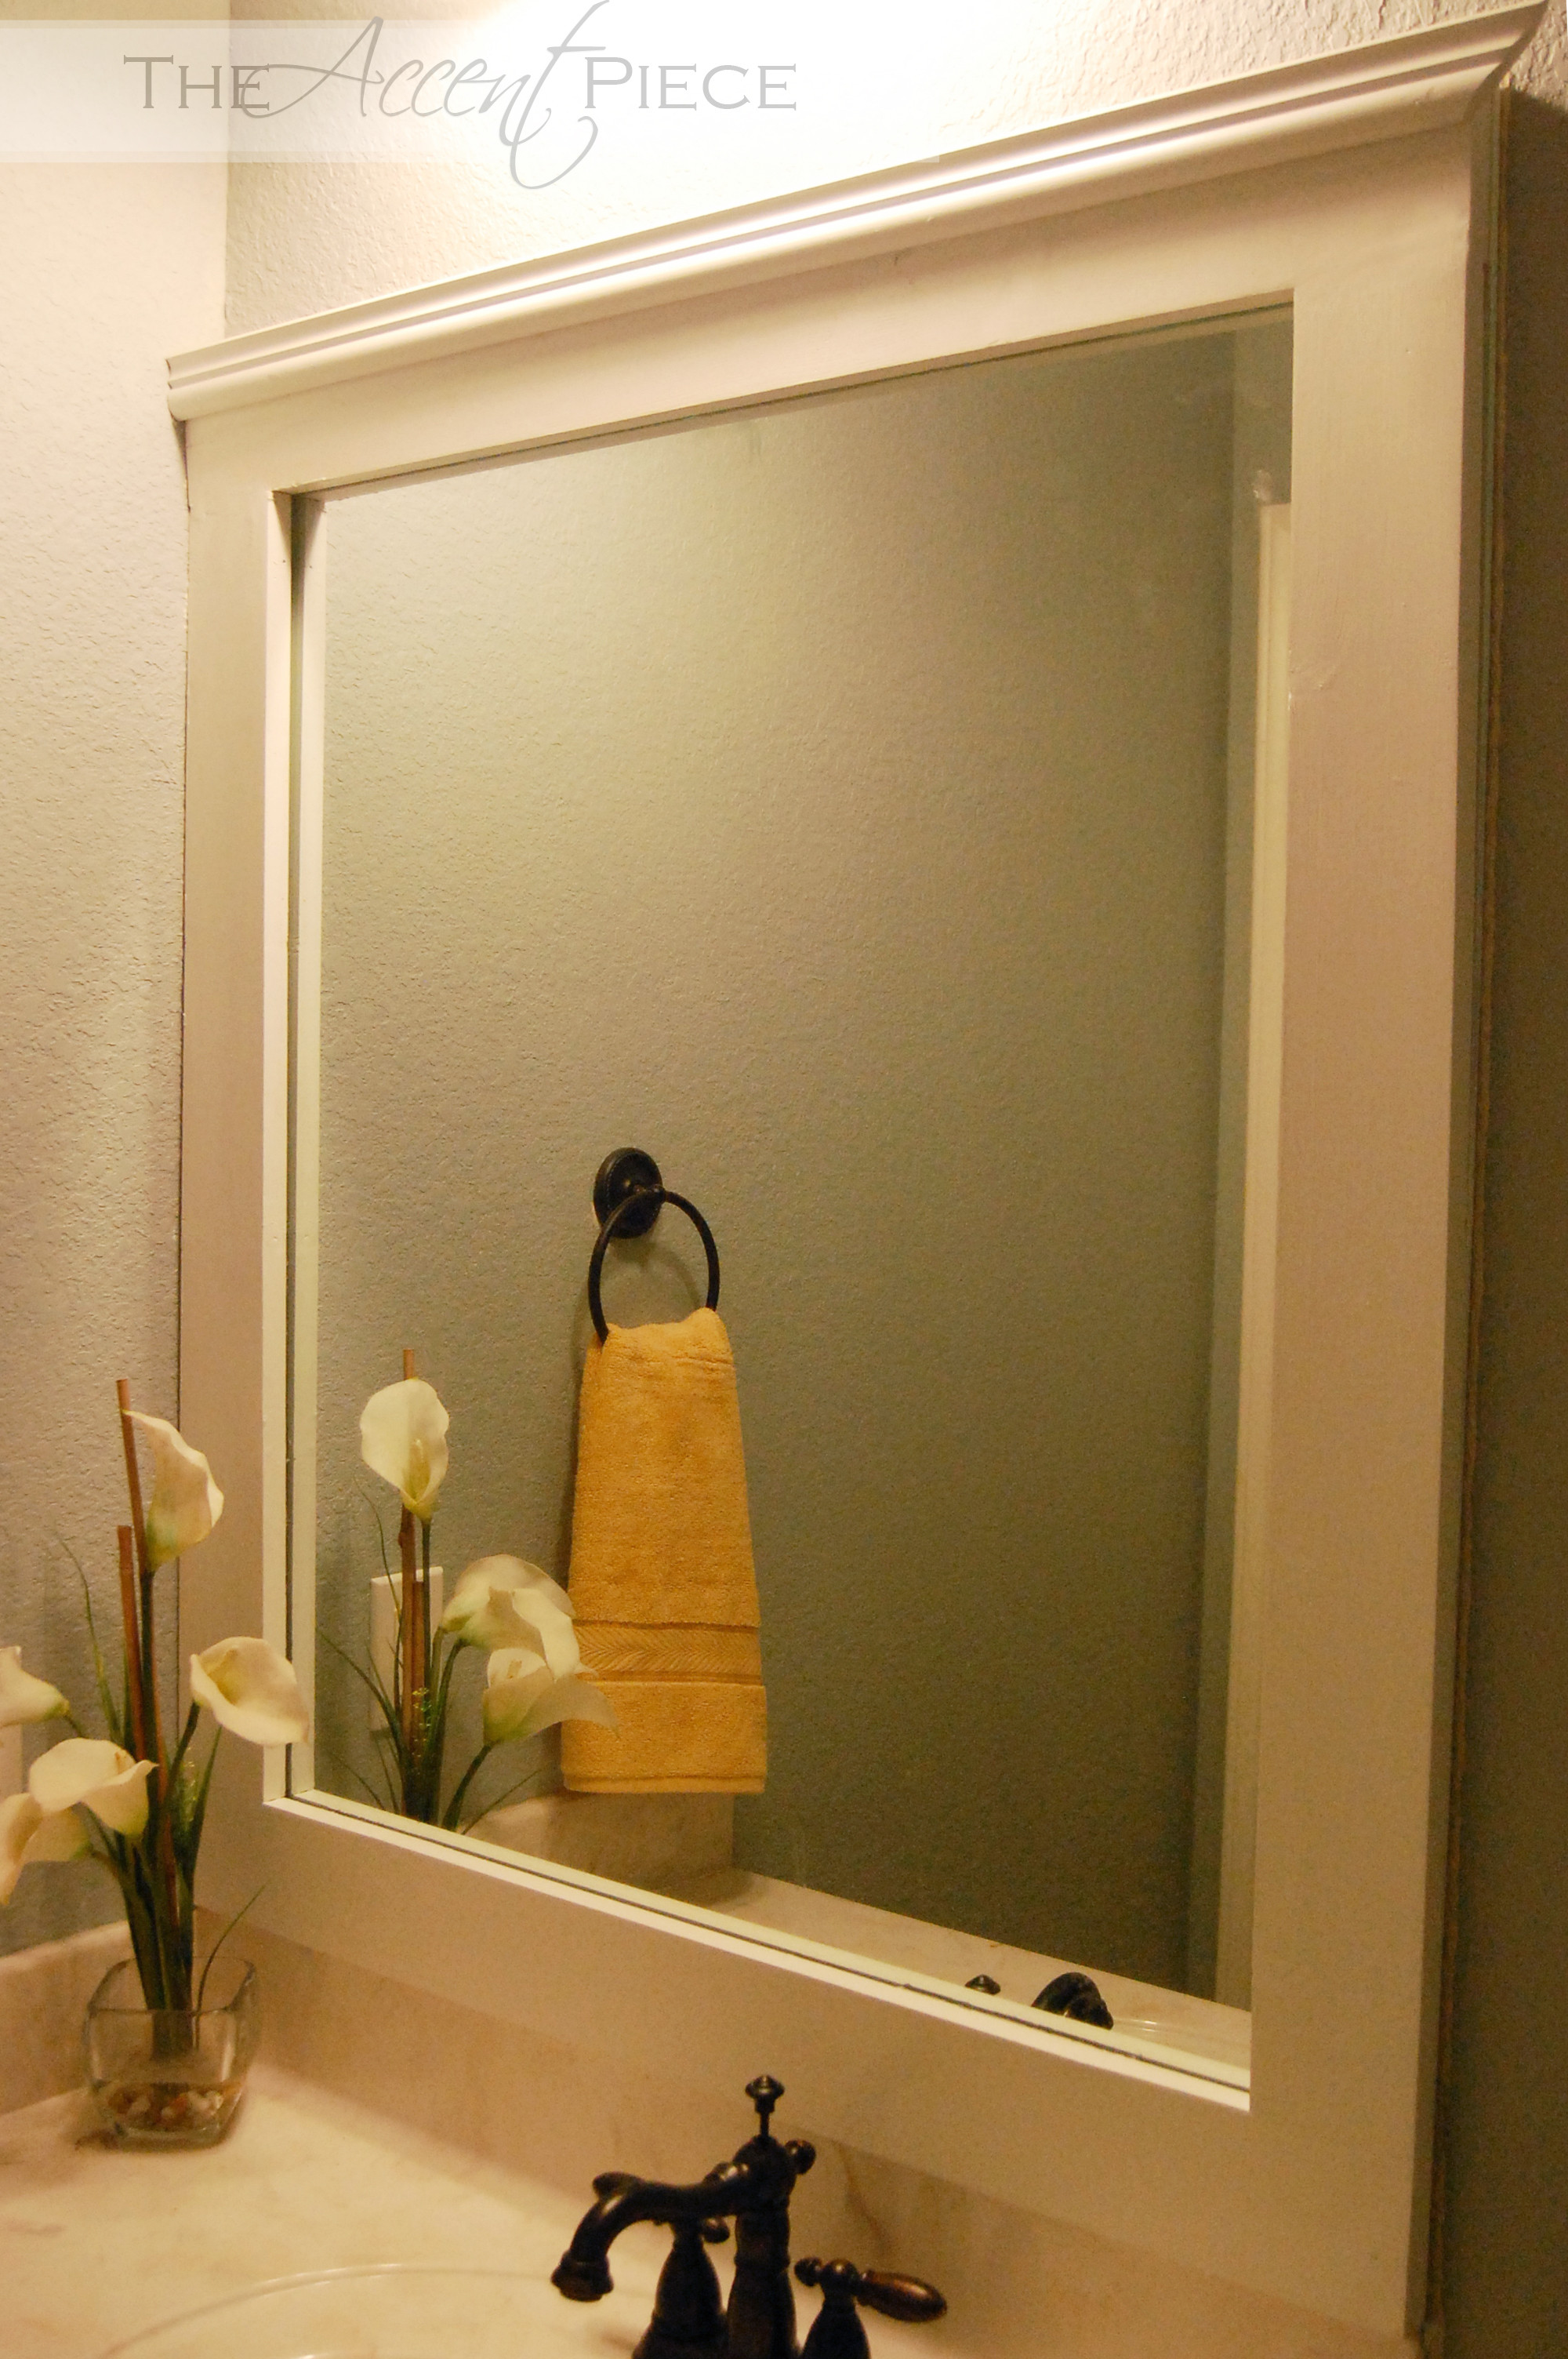 Best ideas about DIY Bathroom Mirror
. Save or Pin DIY Framed Bathroom Mirror Now.